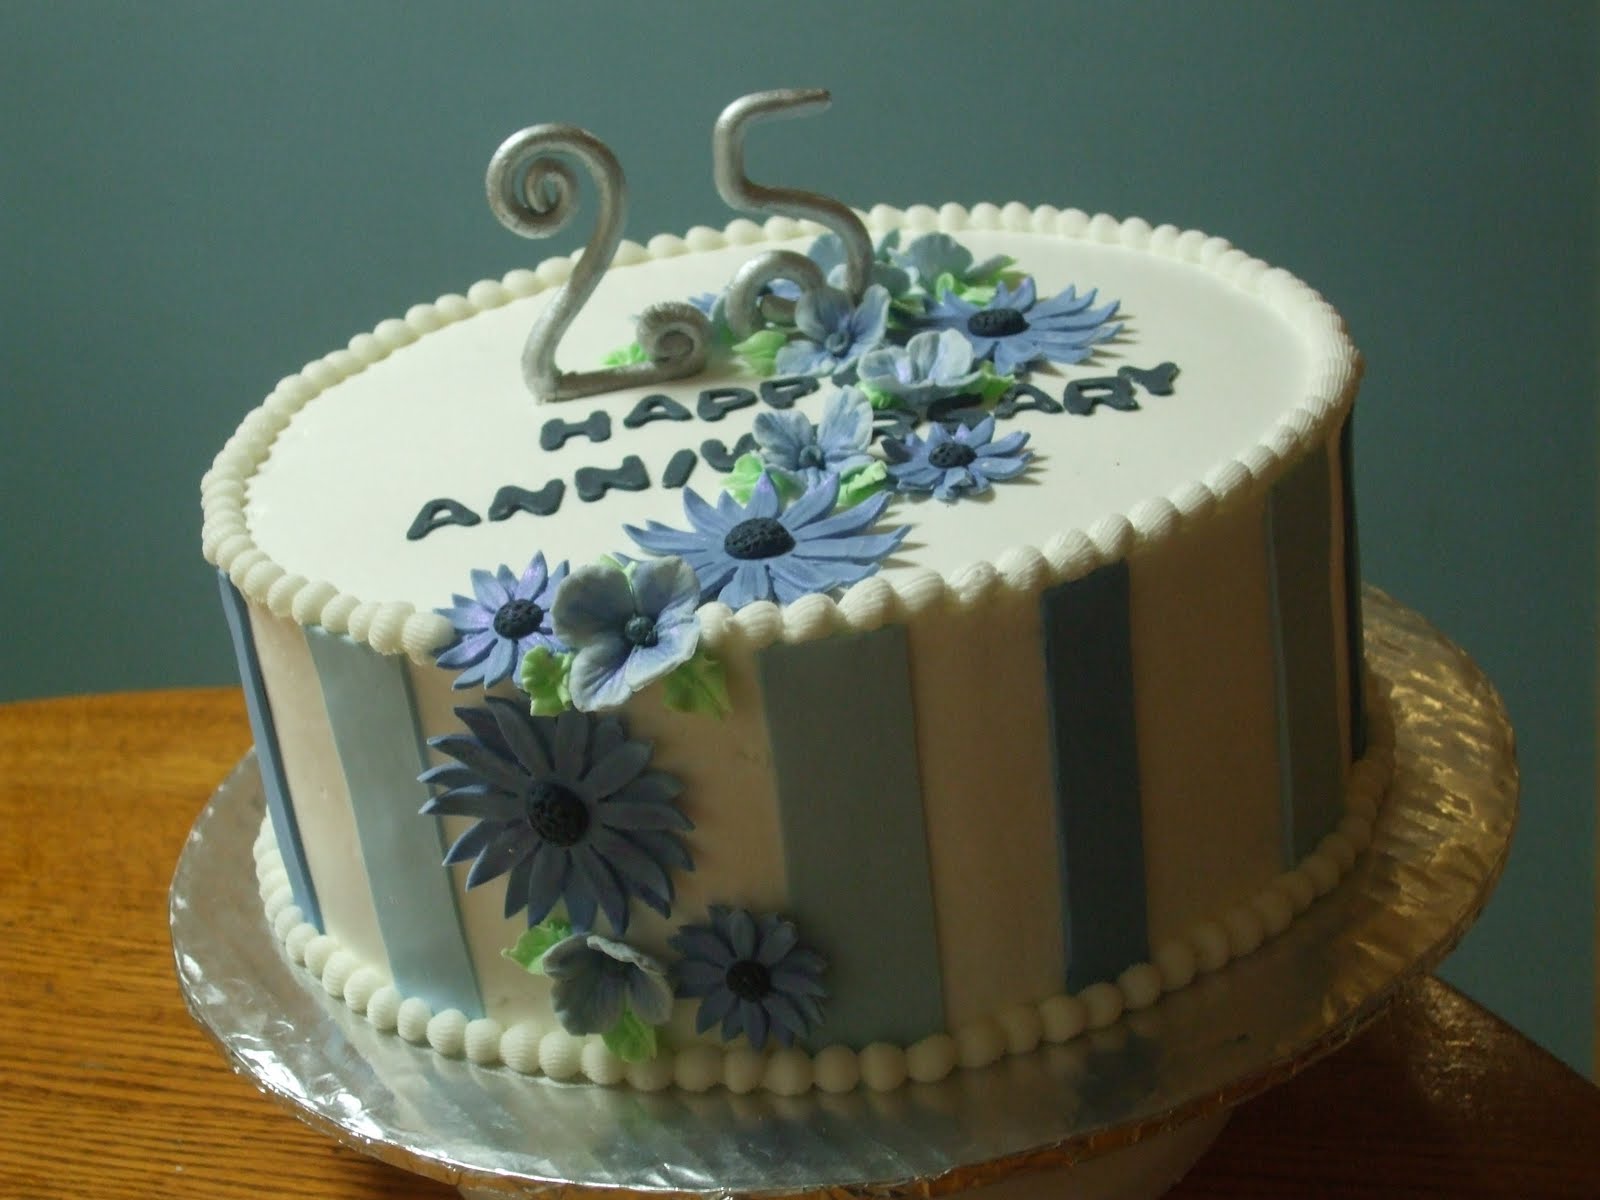 25th anniversary cake